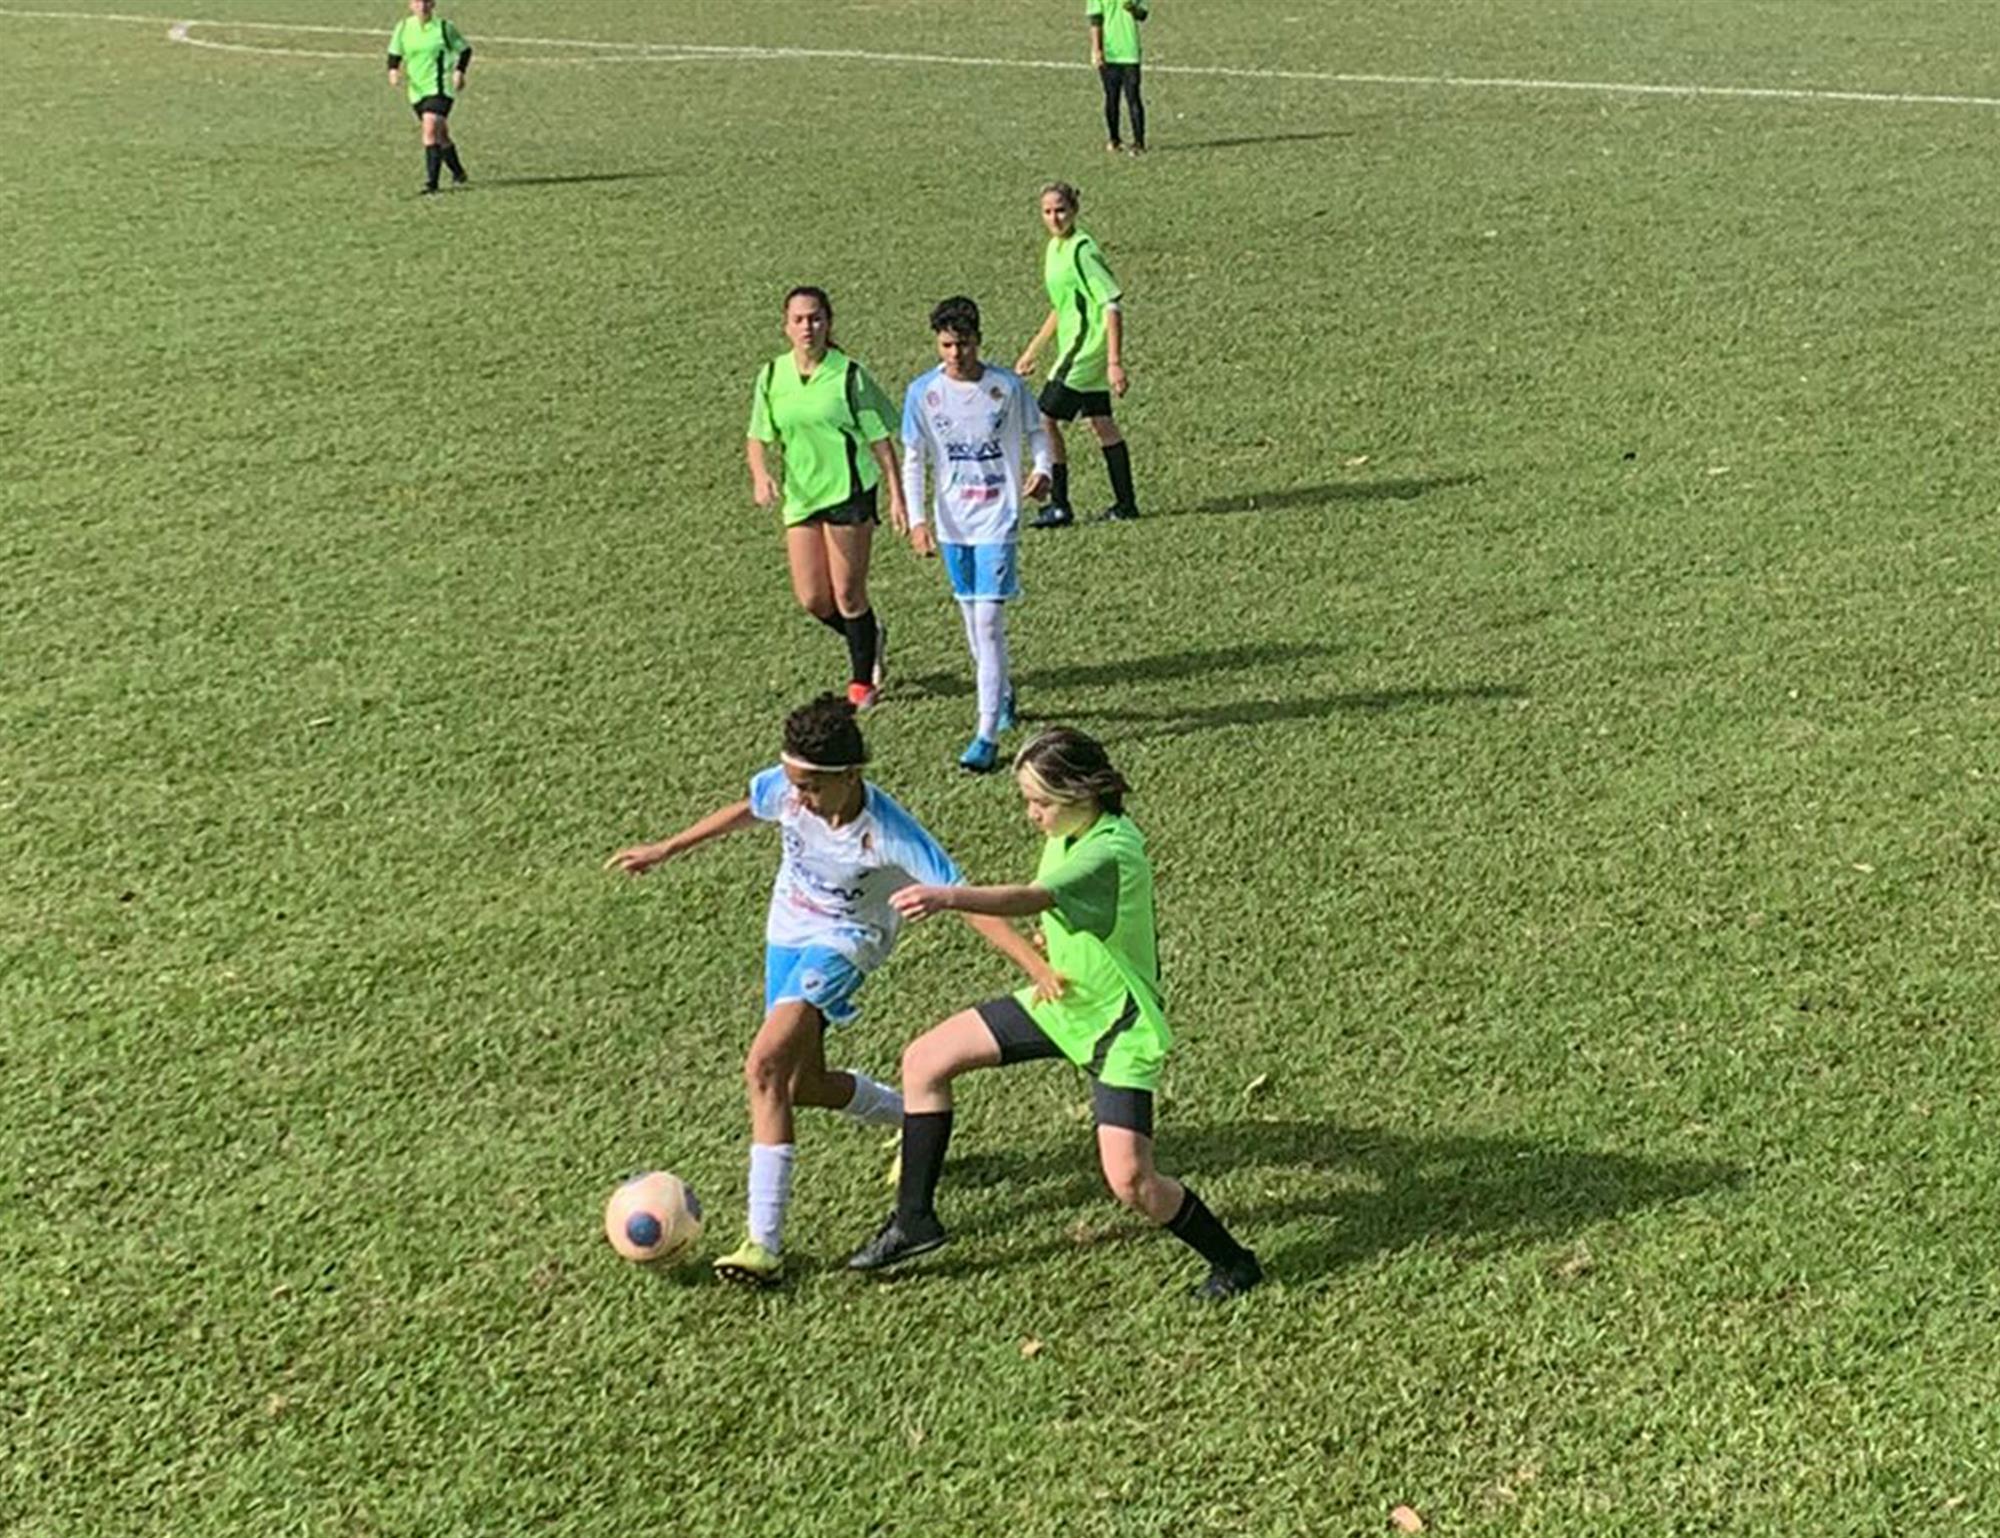 Jogos Escolares Bom de Bola abrem inscrições em Londrina - Blog Londrina